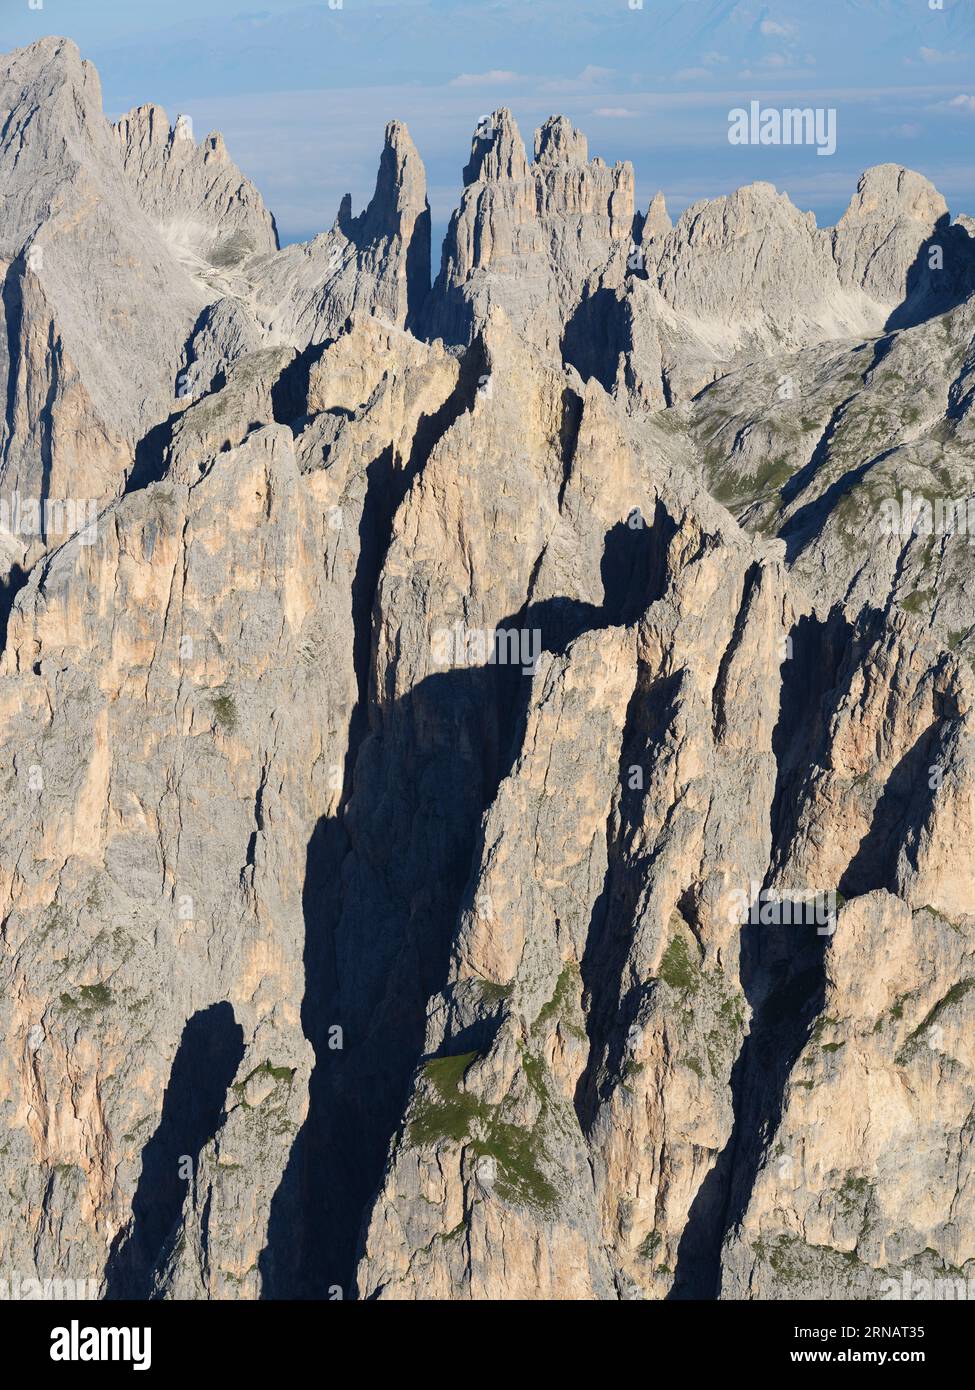 VISTA AEREA. Il frastagliato massiccio orientale del Catinaccio nelle Dolomiti con le Torri Vajolet (2821 m) in lontananza. Trentino-alto Adige, Italia. Foto Stock